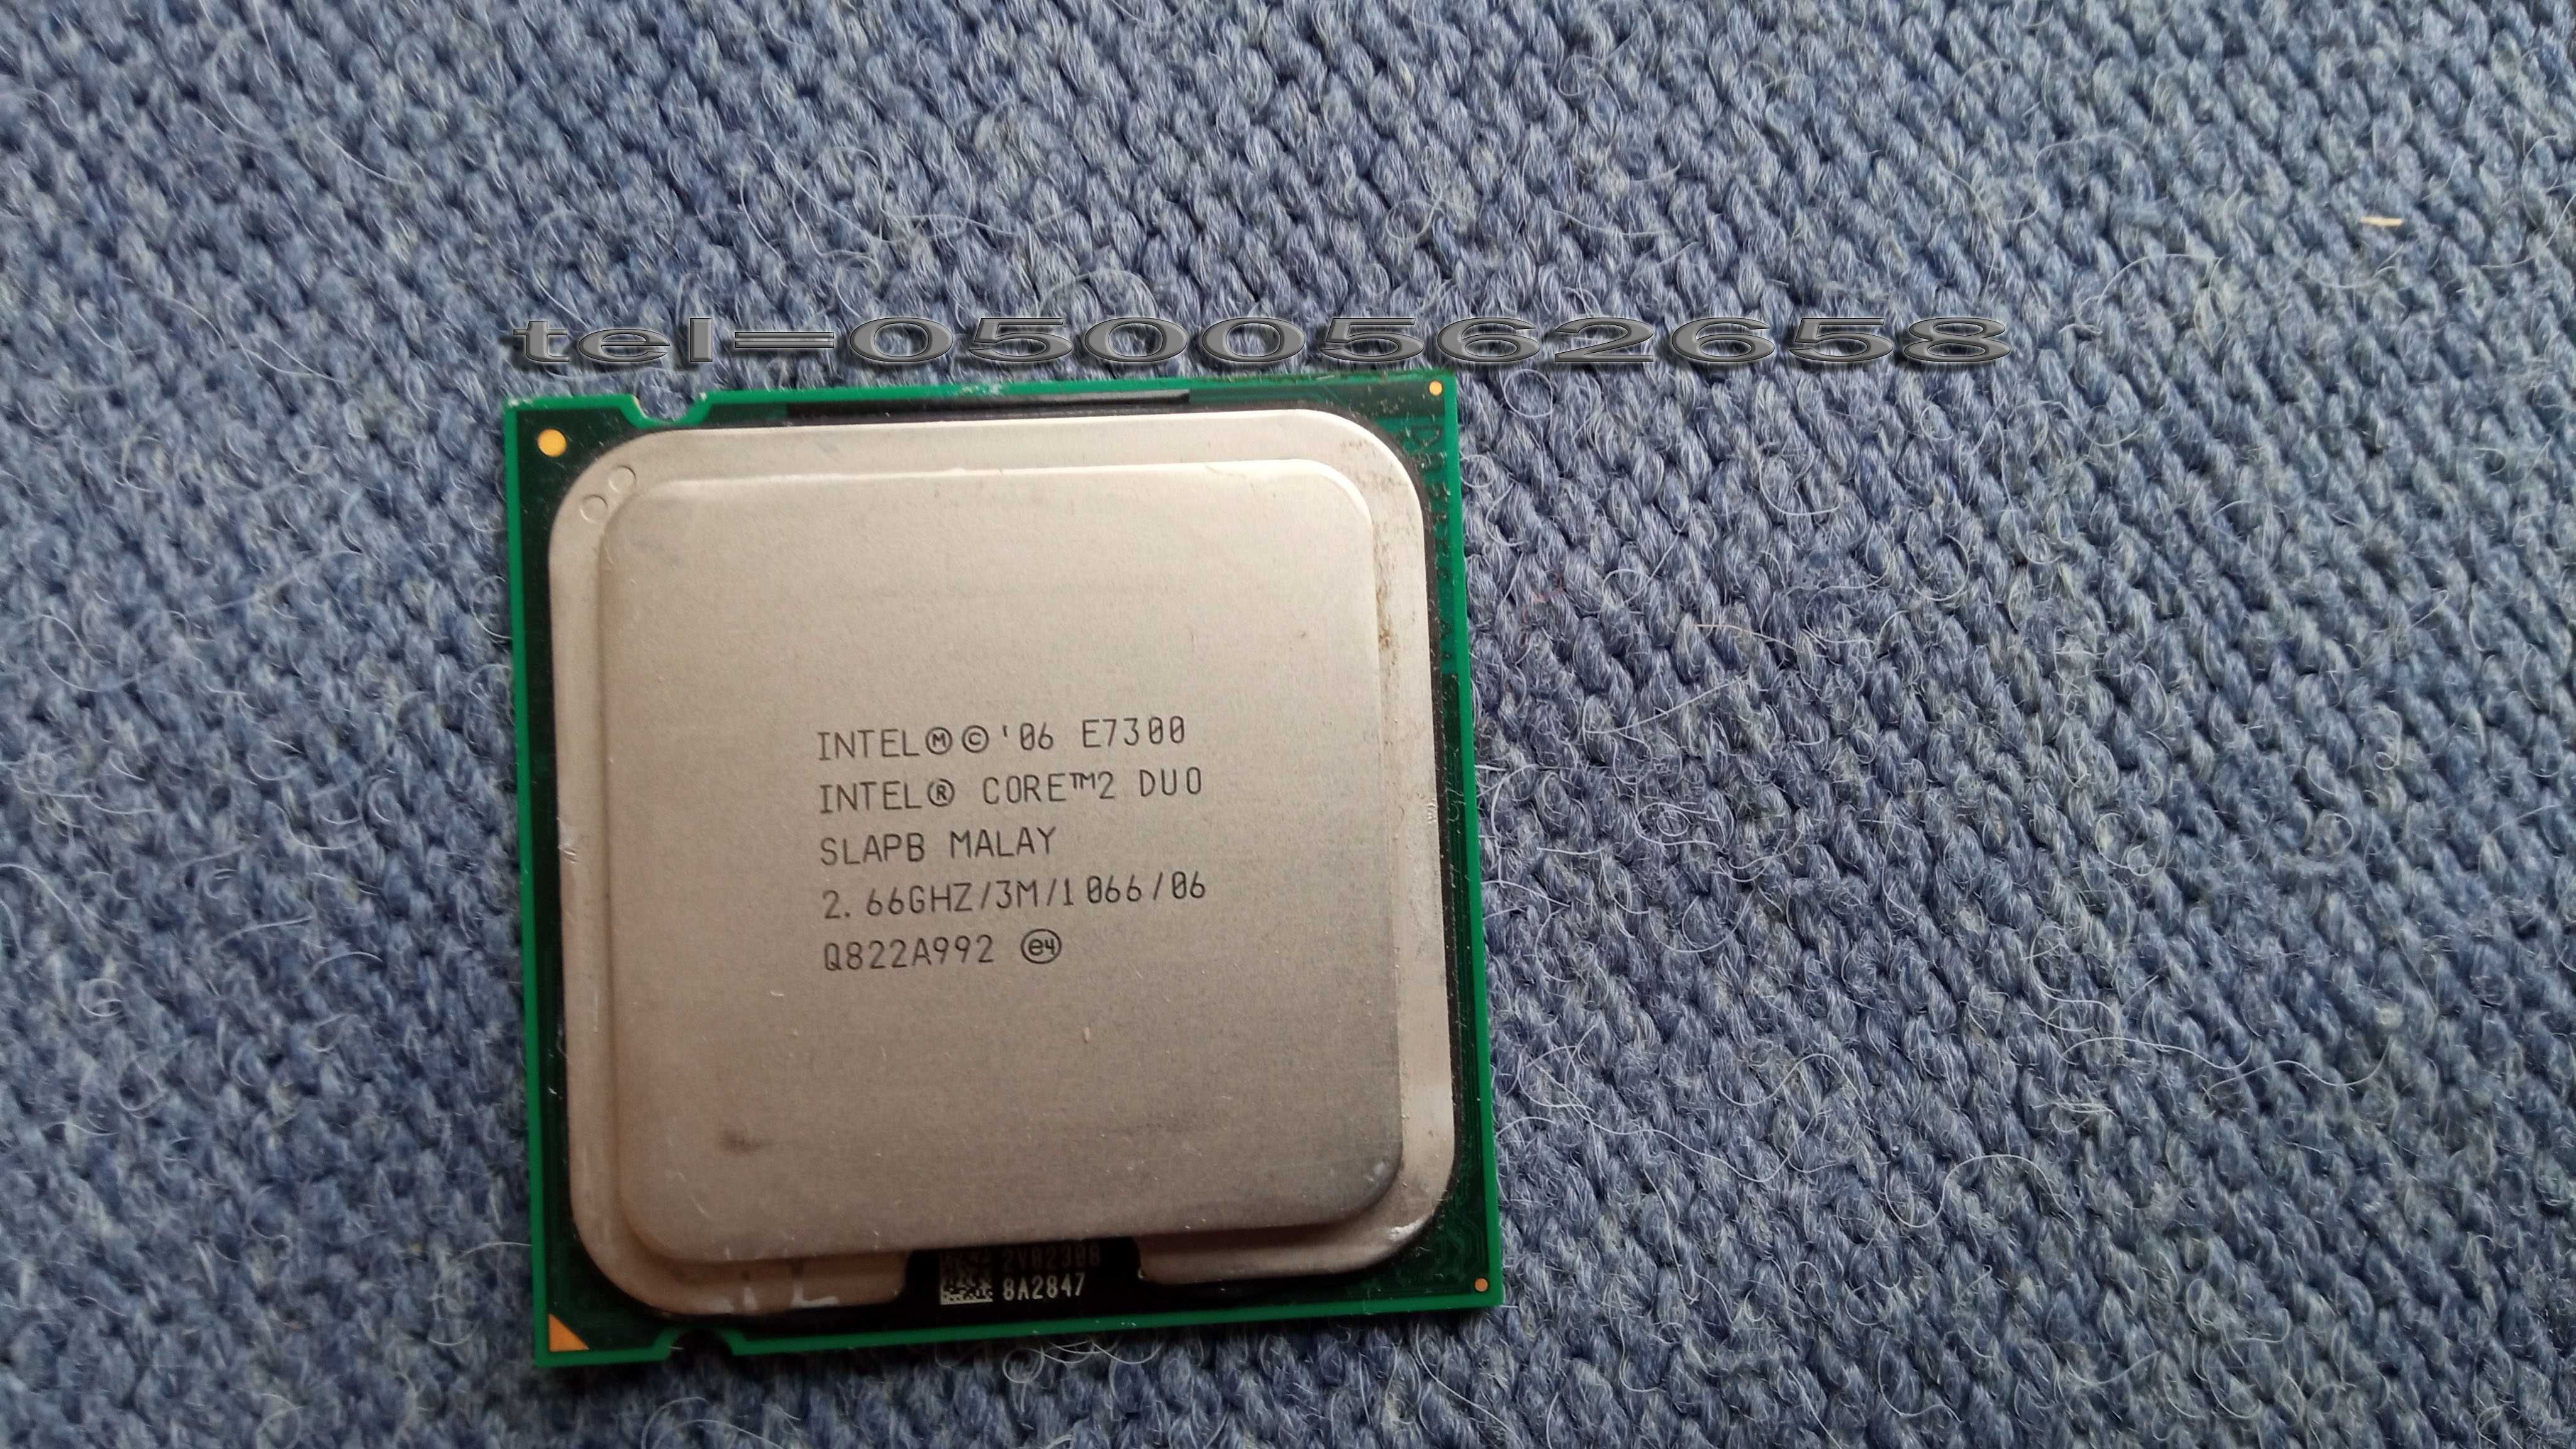 Процессор Intel Core2 Duo E7300 2.66GHz/3M/1066 , s775